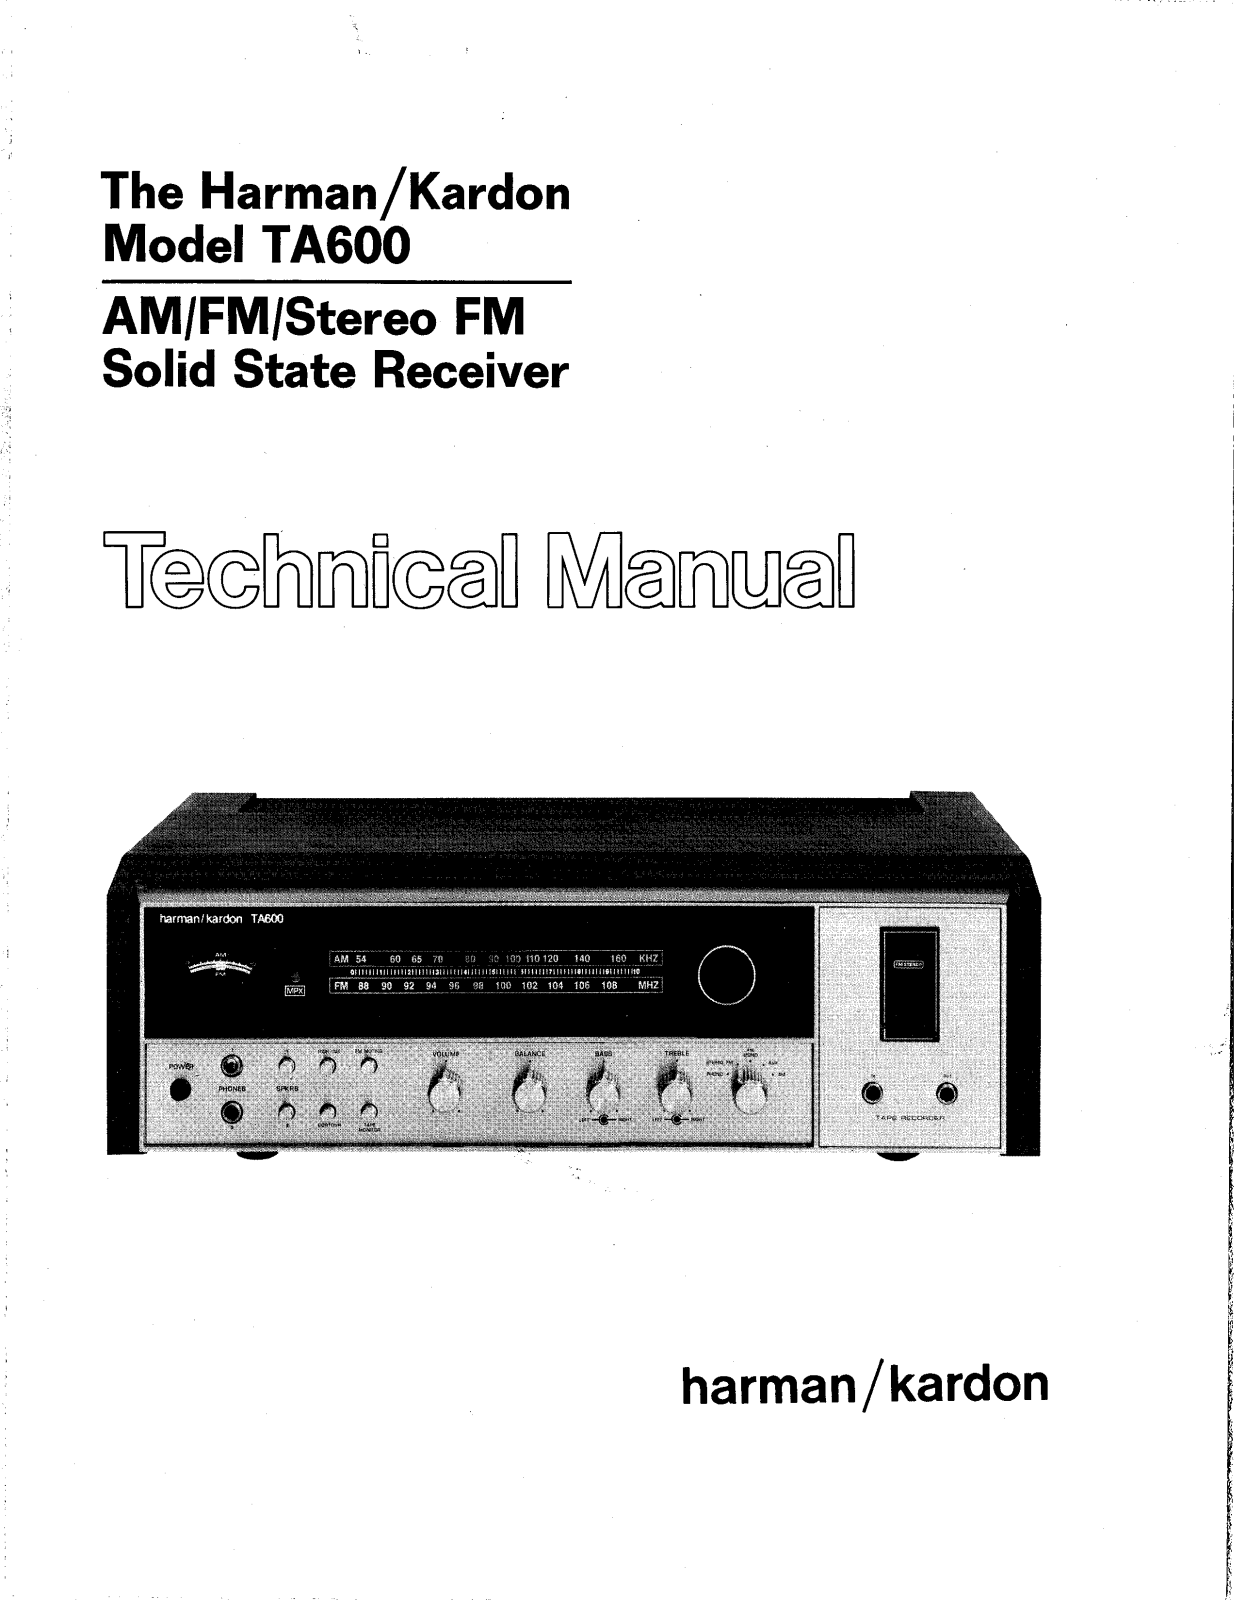 Harman Kardon TA-600 Service manual